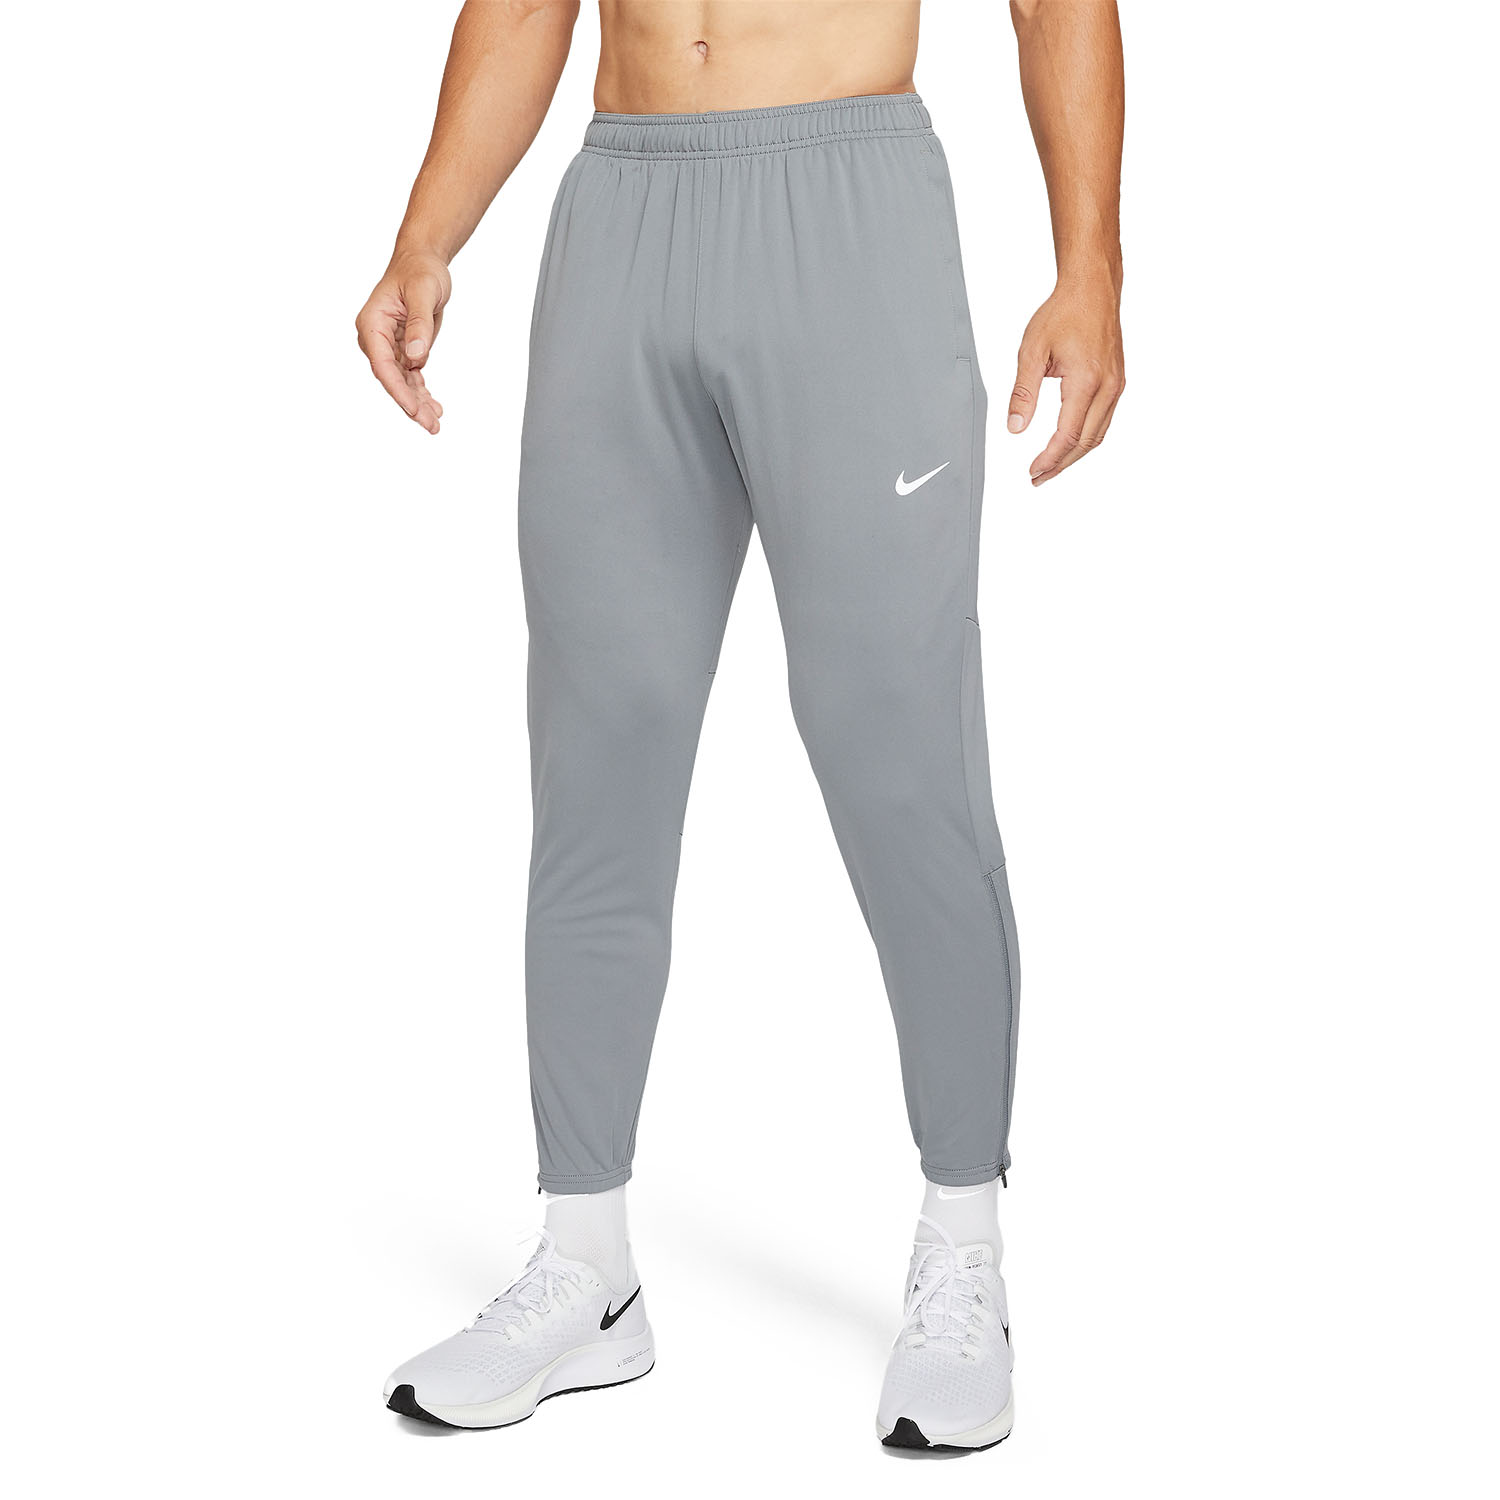 Nike Dri-FIT Challenger Knit Pants - Smoke Grey/Reflective Silver